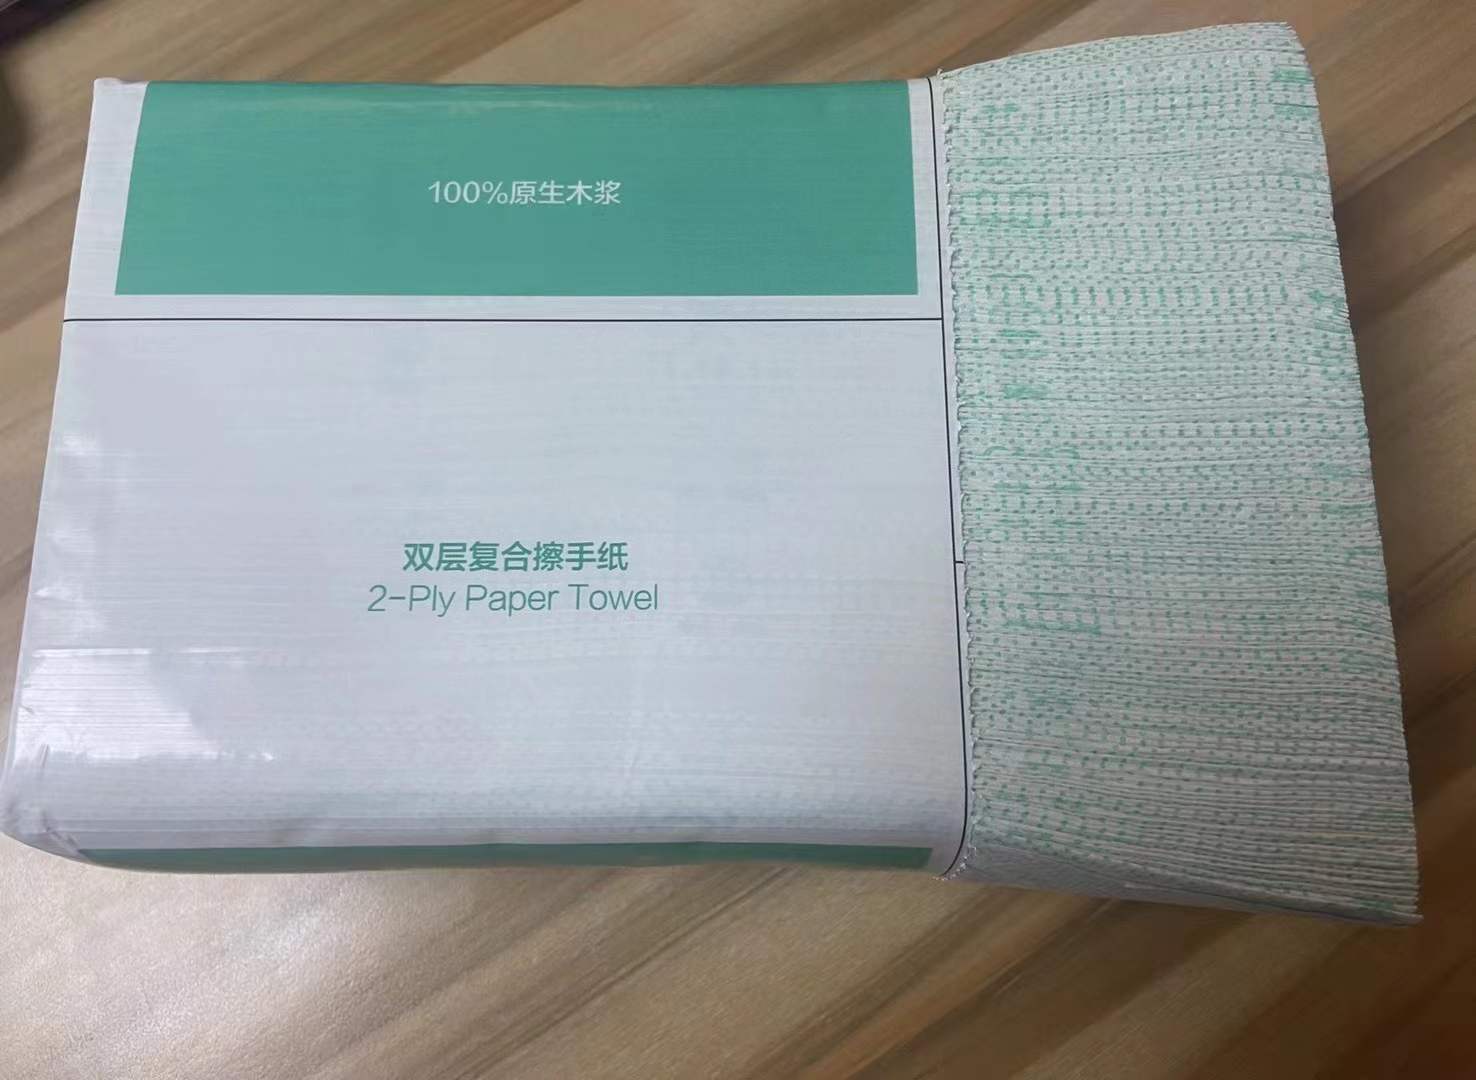 N fold lijmlaminaasje Handdoekpapier (1)